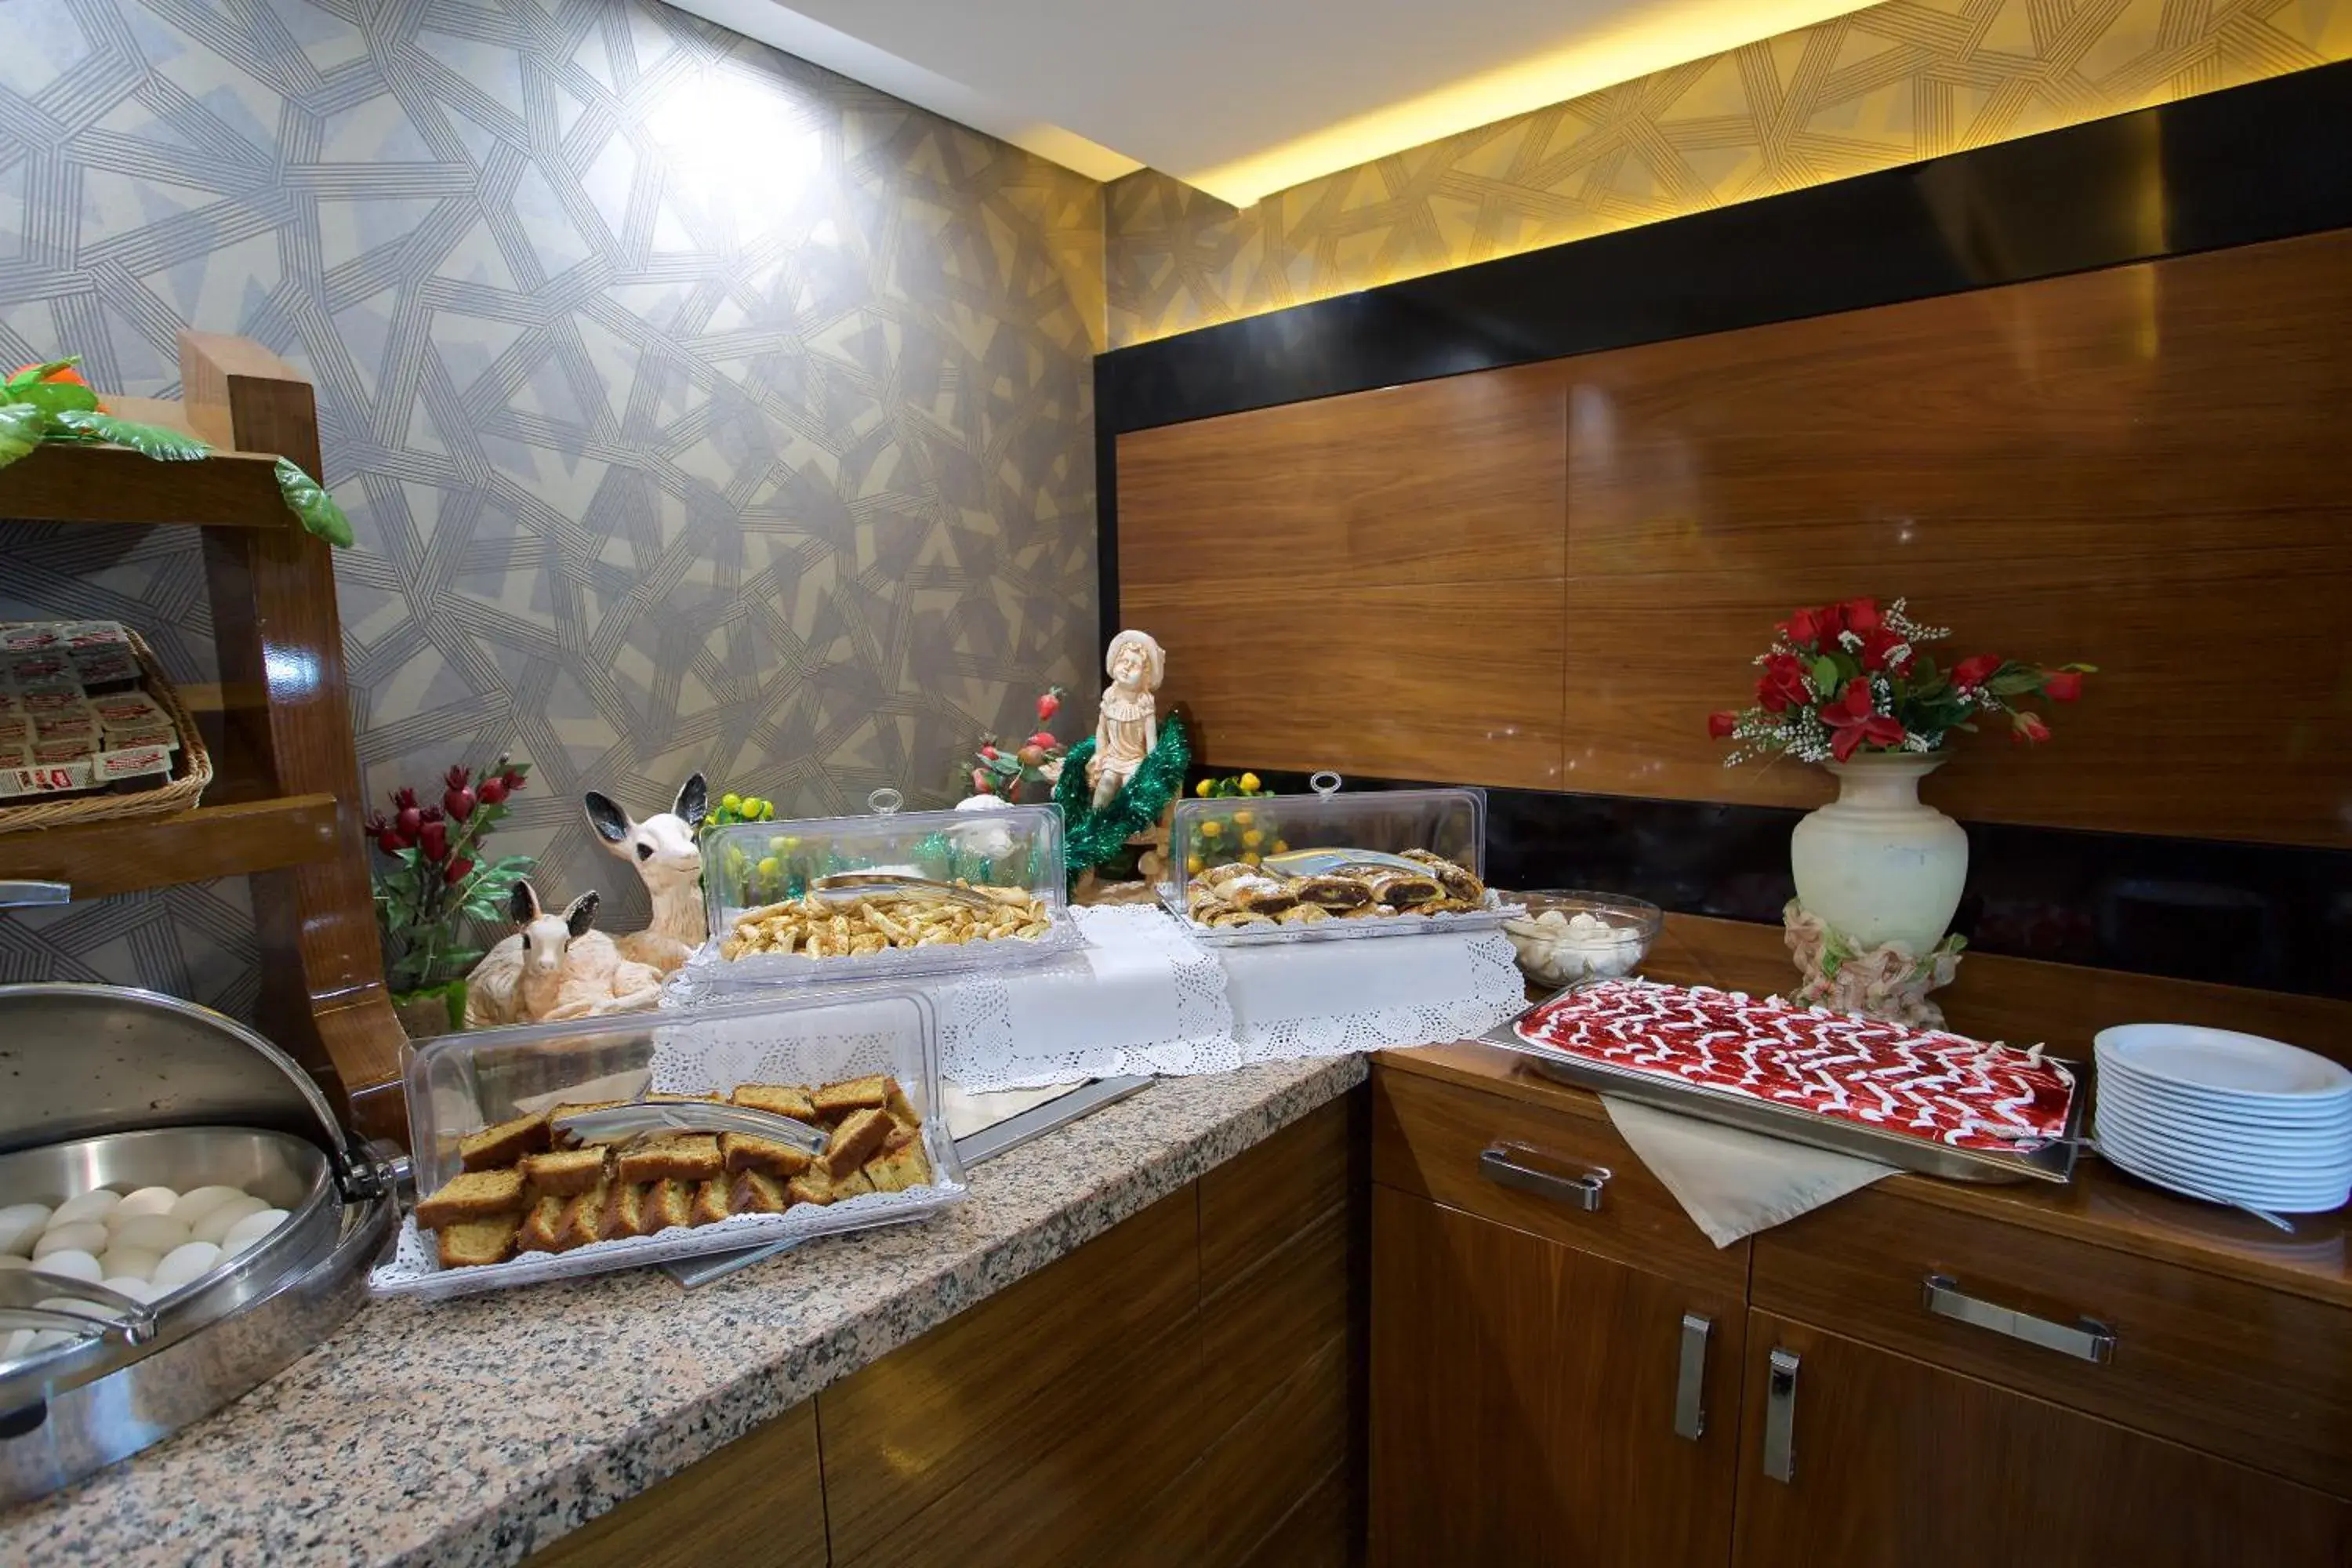 Buffet breakfast in Hotel Istanbul Trend